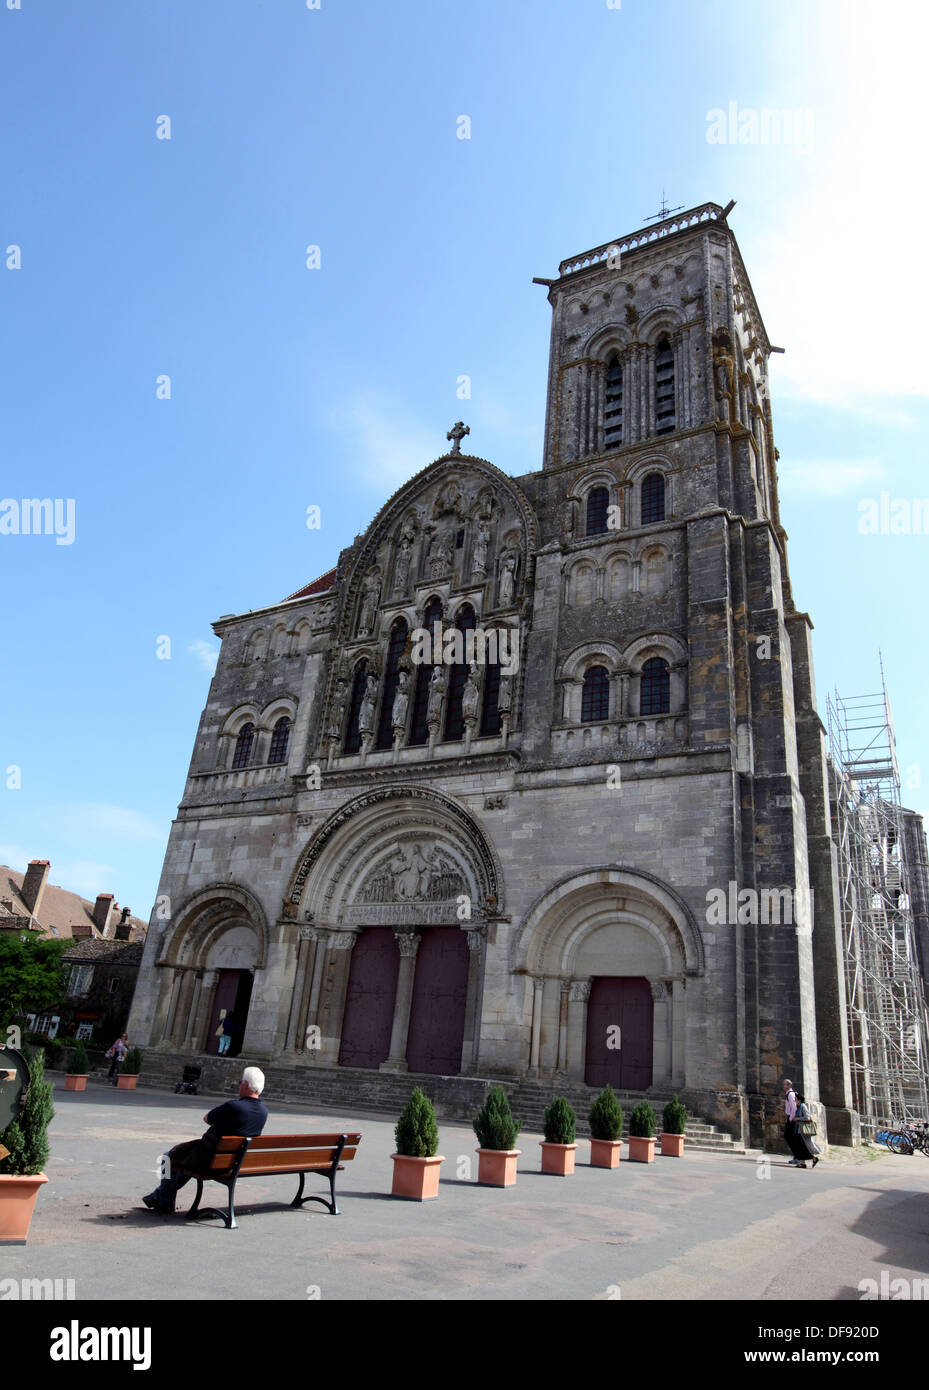 Basílica de Vezelay es de la Edad Media un importante lugar en la Cristiandad, lugar de peregrinación en el camino de St Jacques de Foto de stock